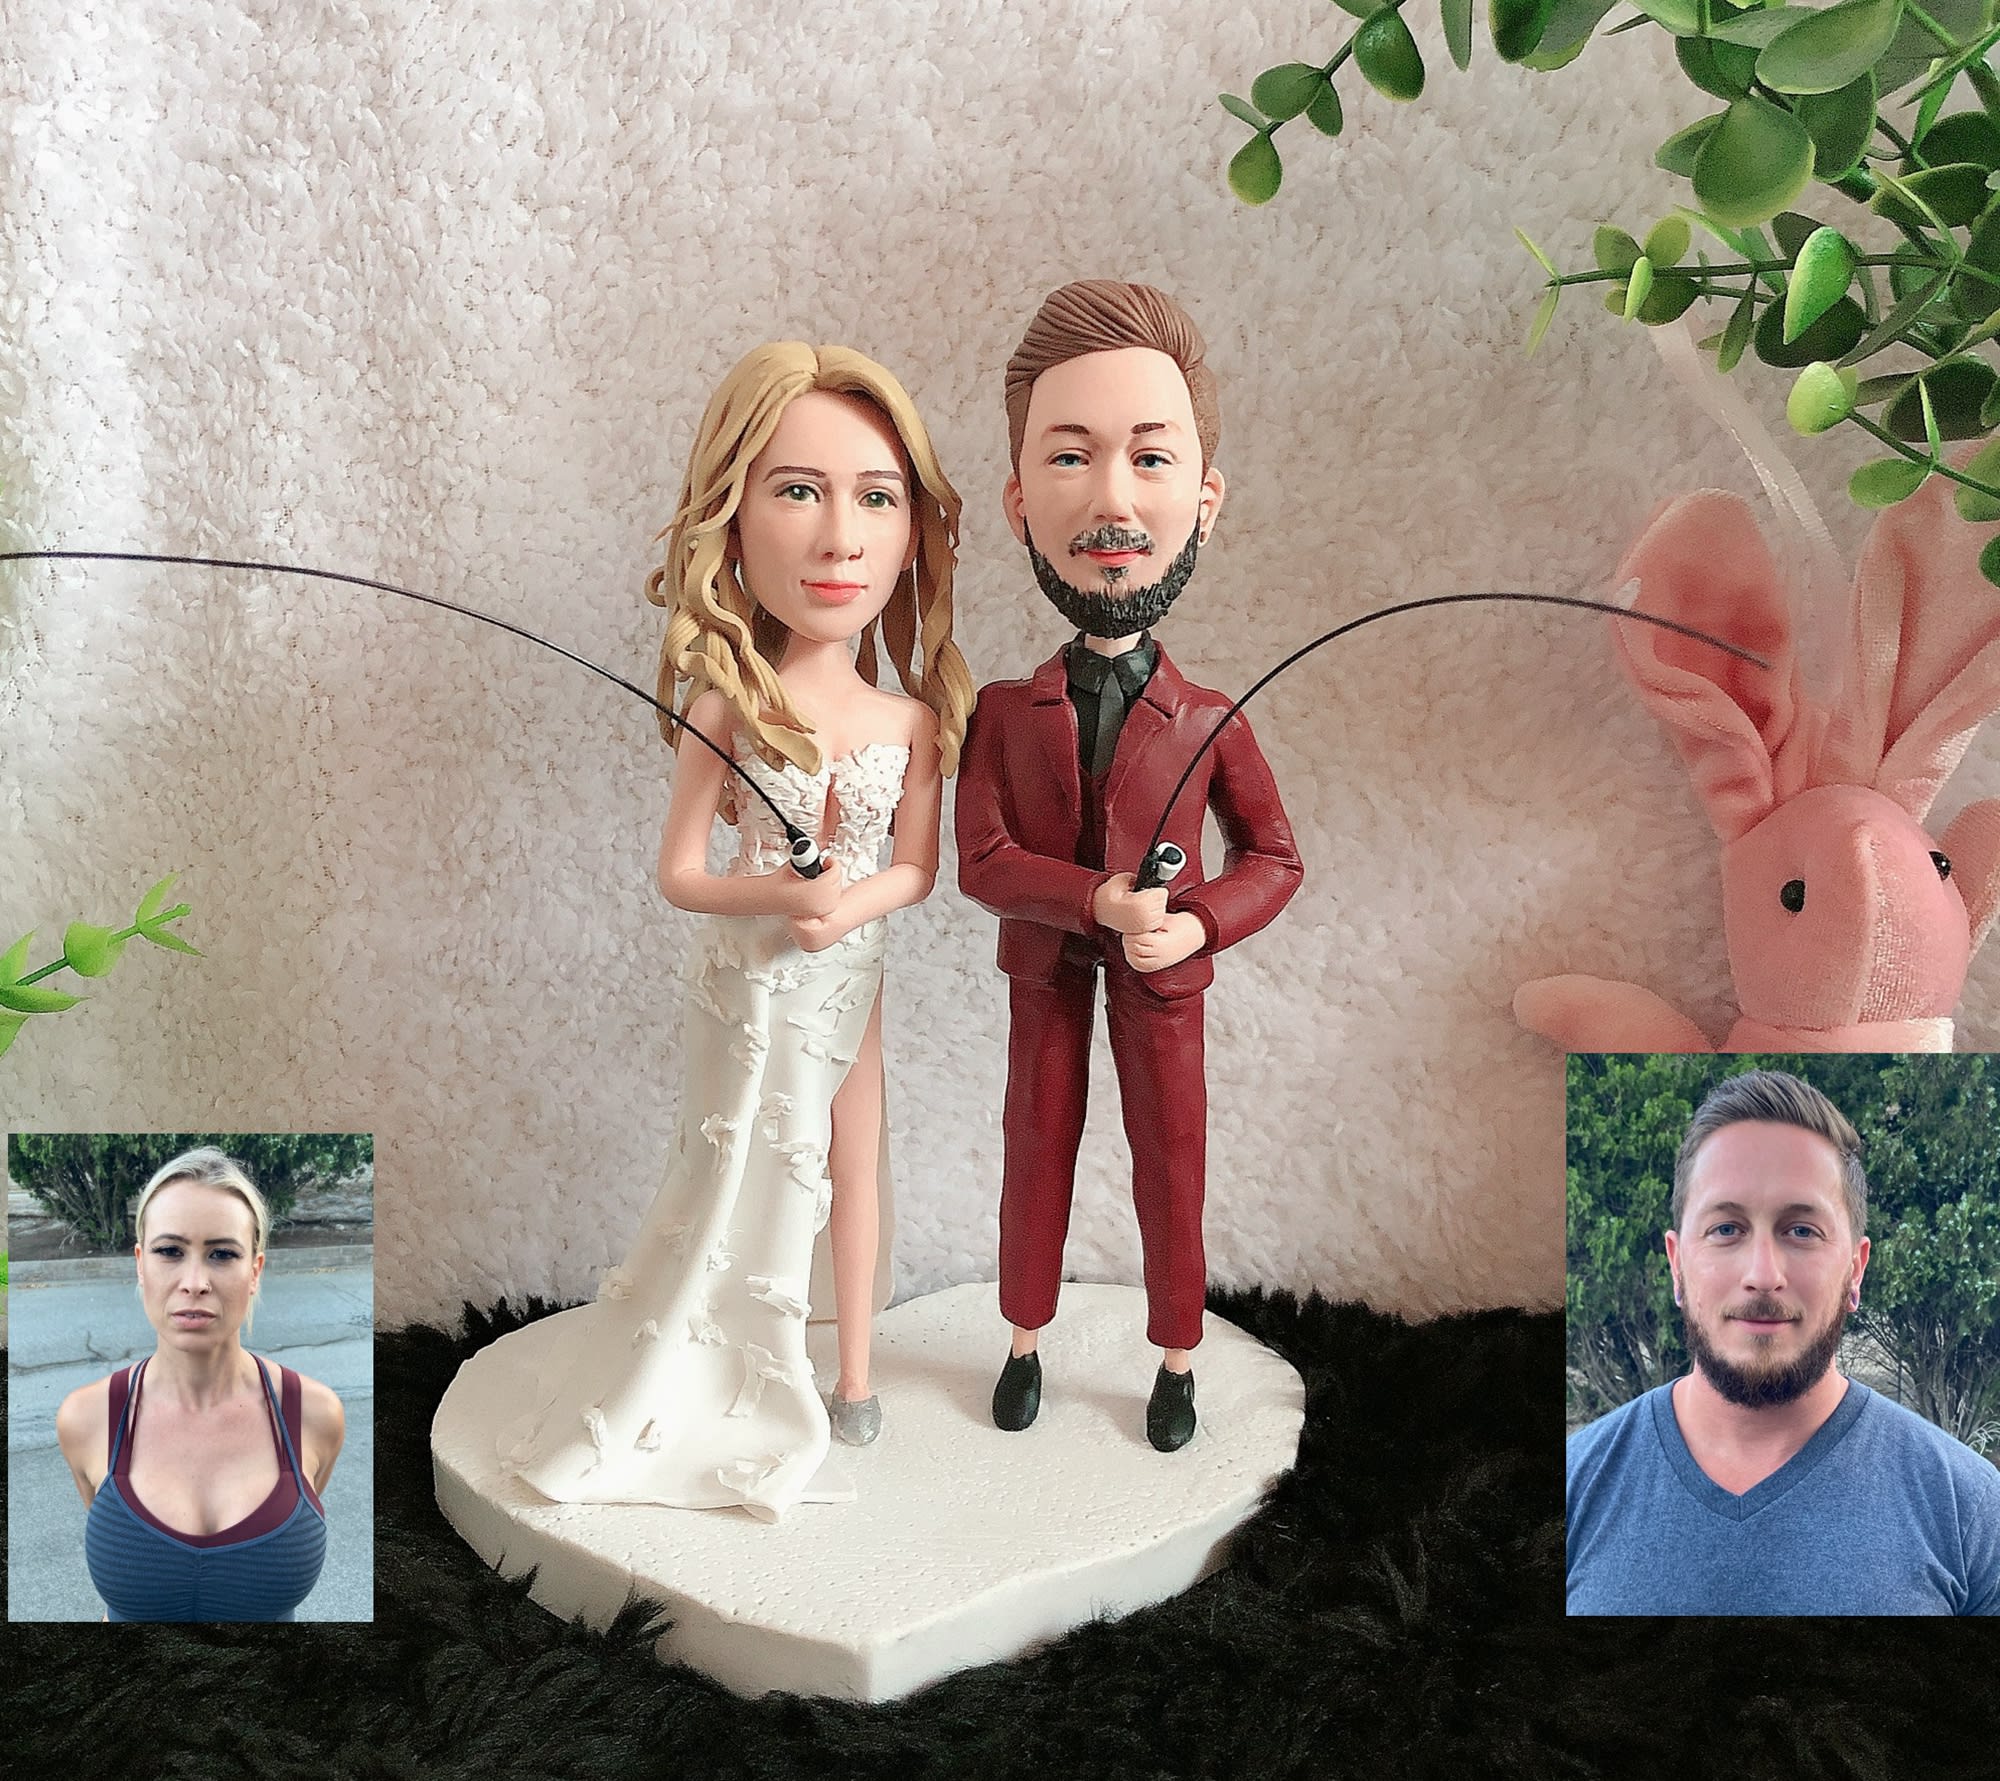 Hochzeit Figuren personalisiert als Wackelkopf - Hochzeitsgeschenk